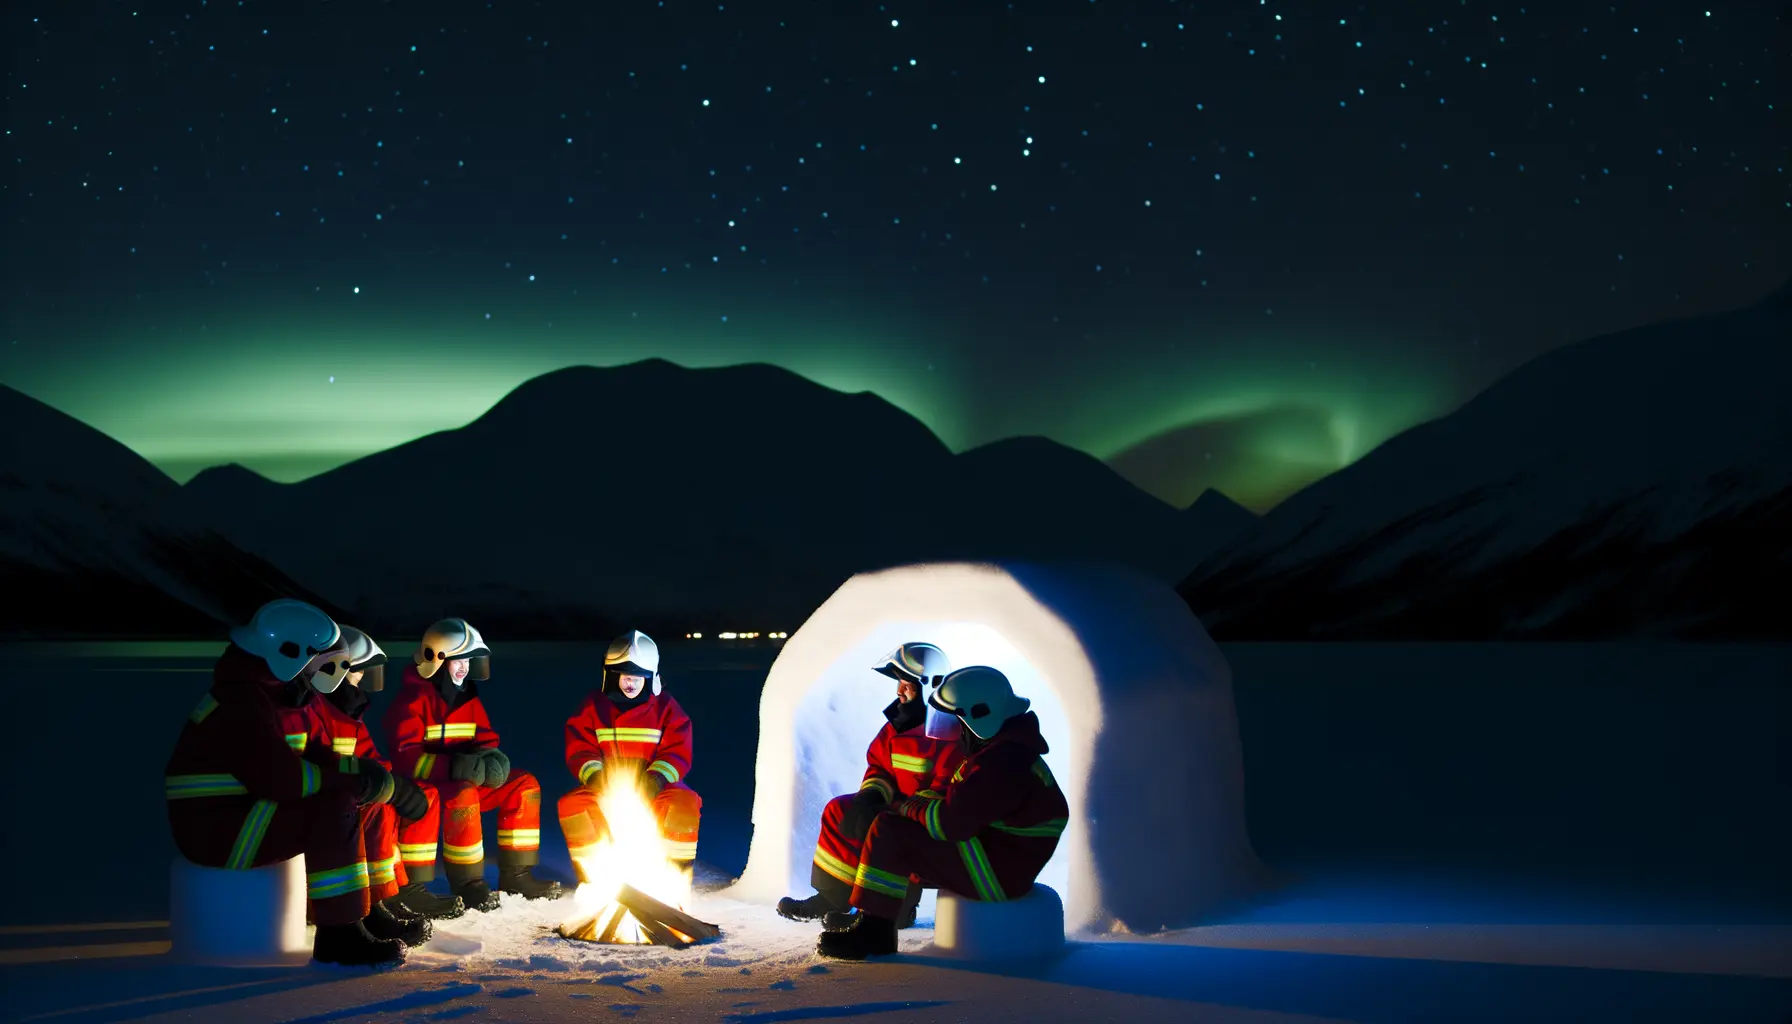 Winterliche Szenerie bei Nacht mit Lagerfeuer und Nordlichtern